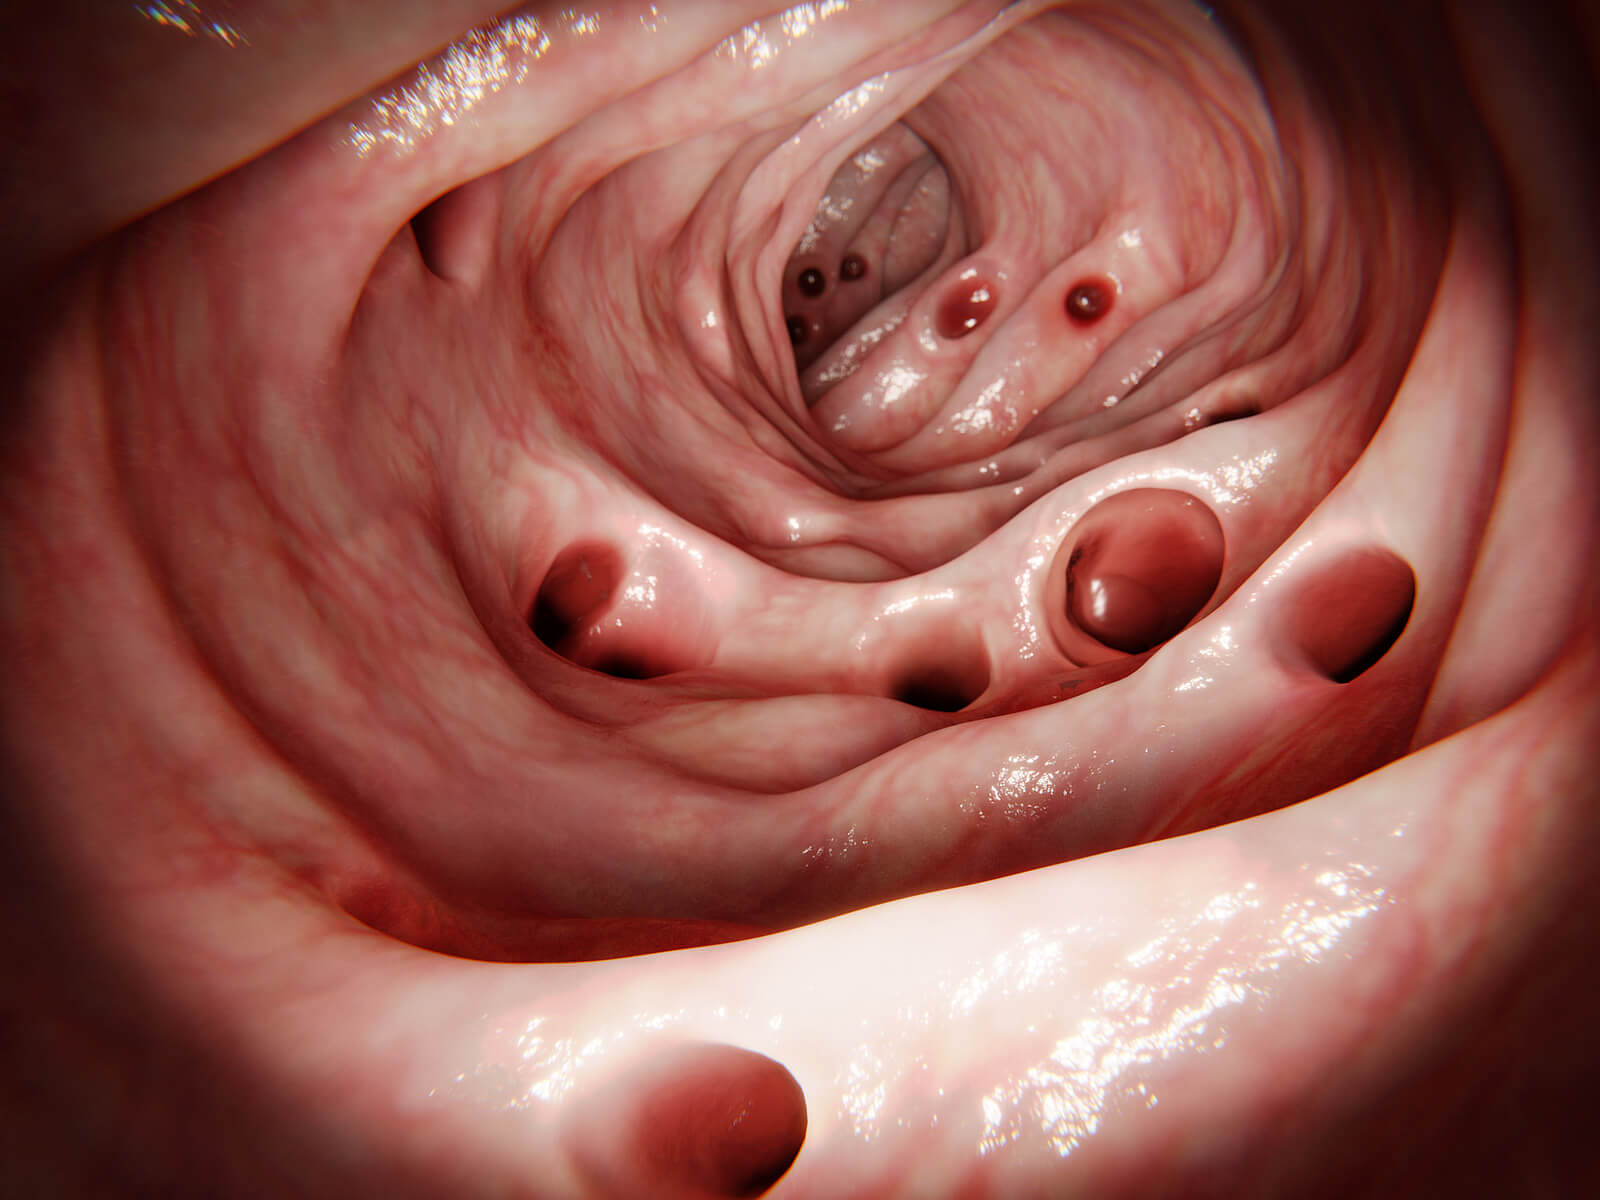 Divertículas en el intestino grueso.